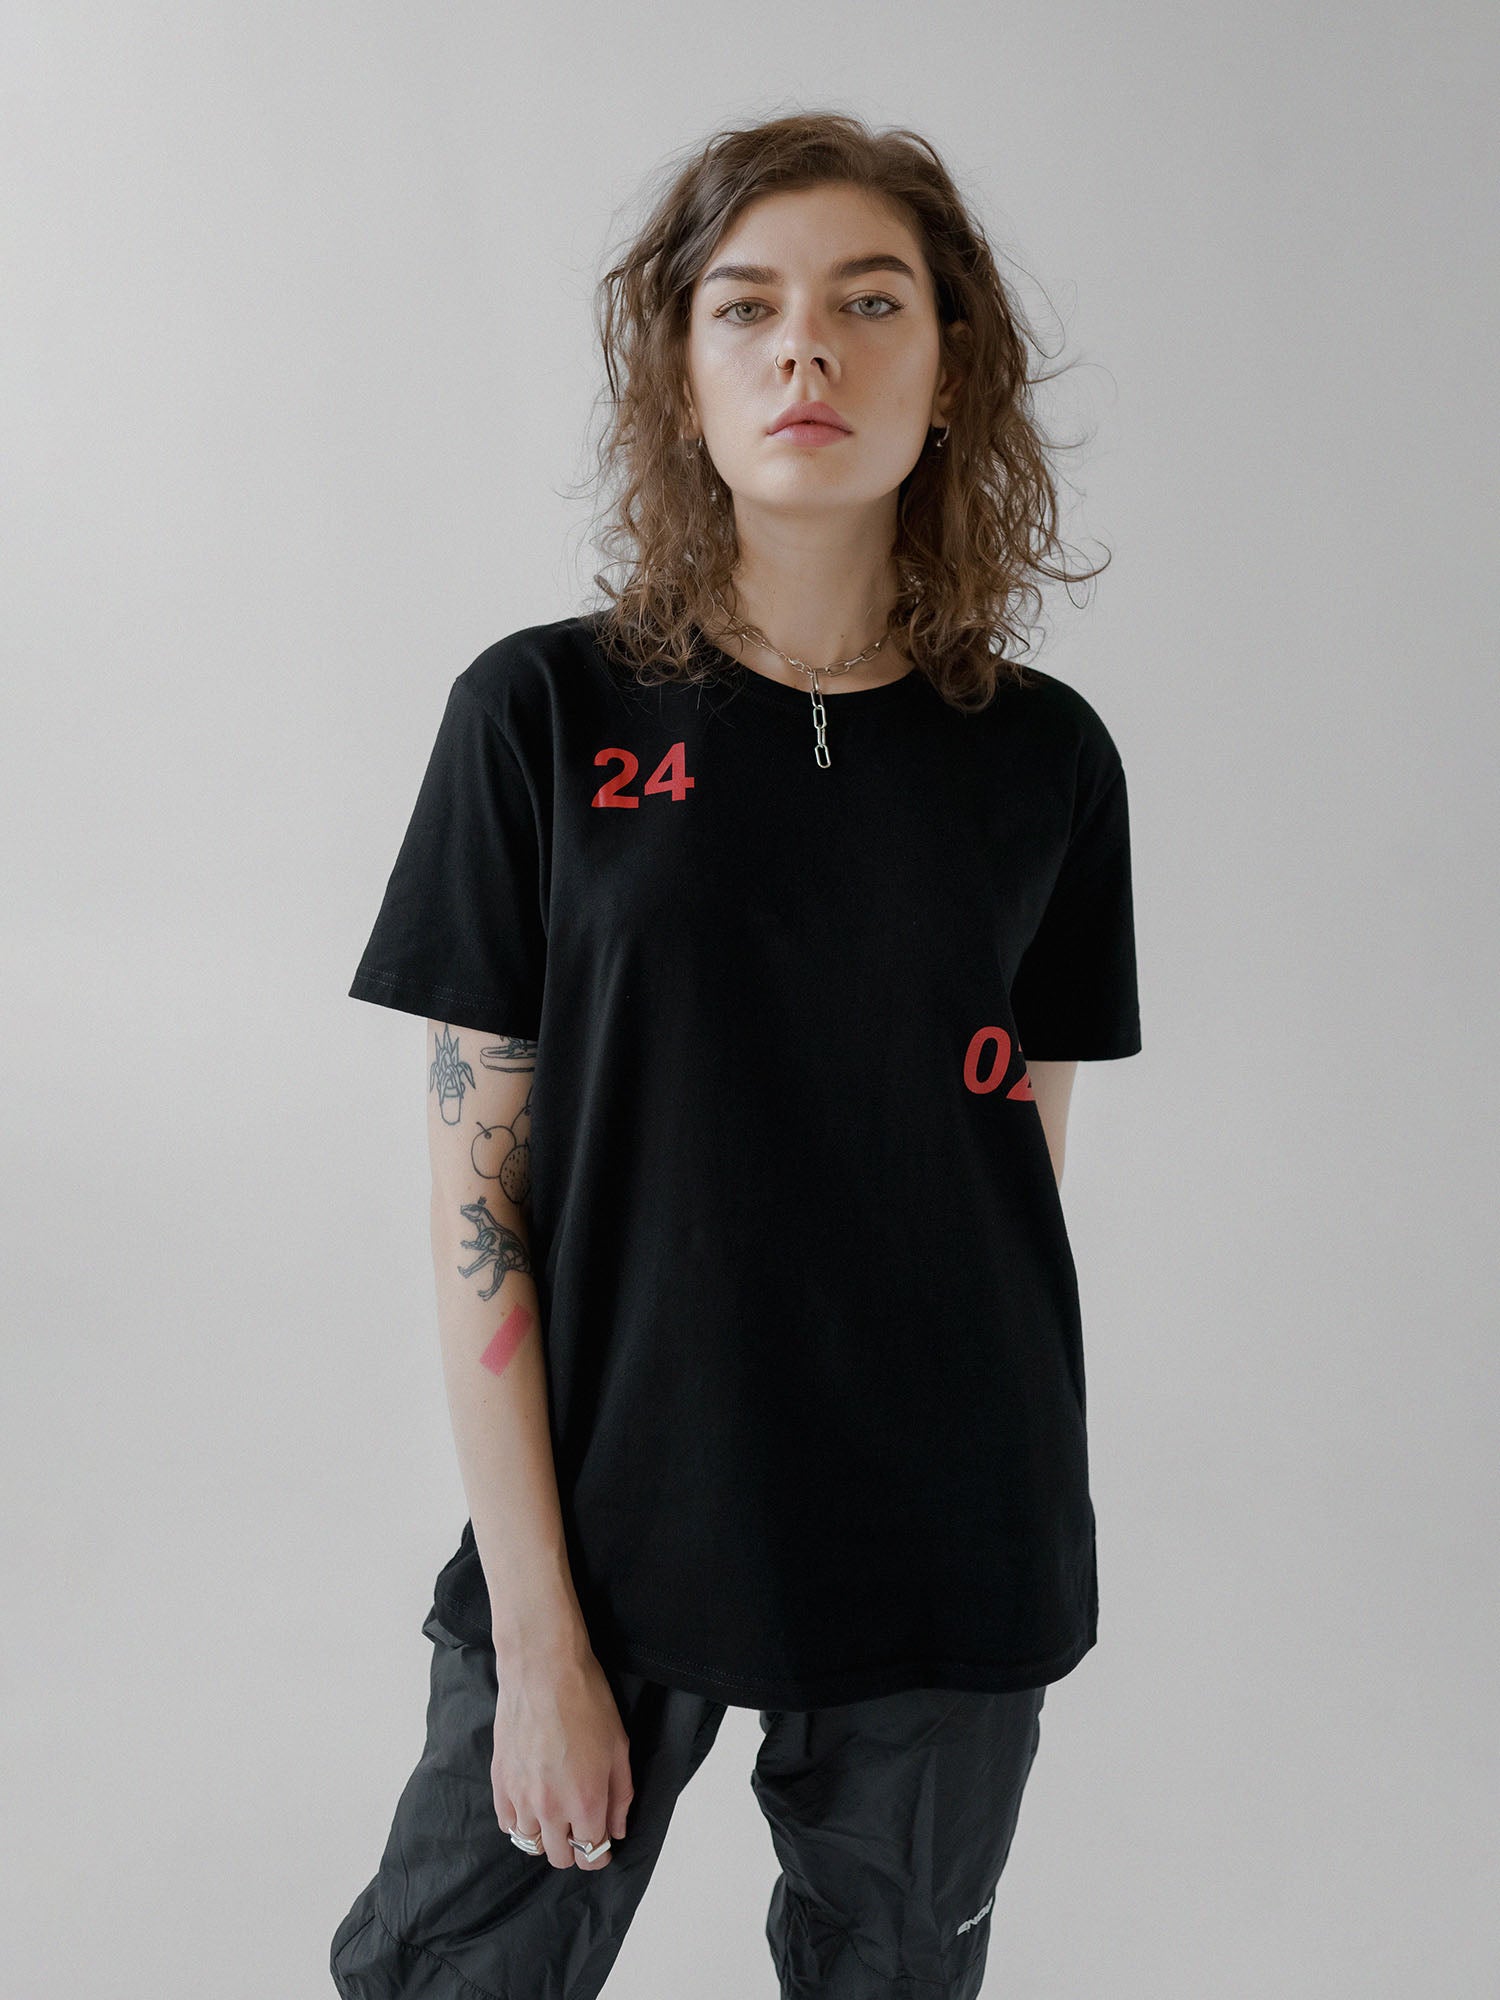 24 02 T-Shirt